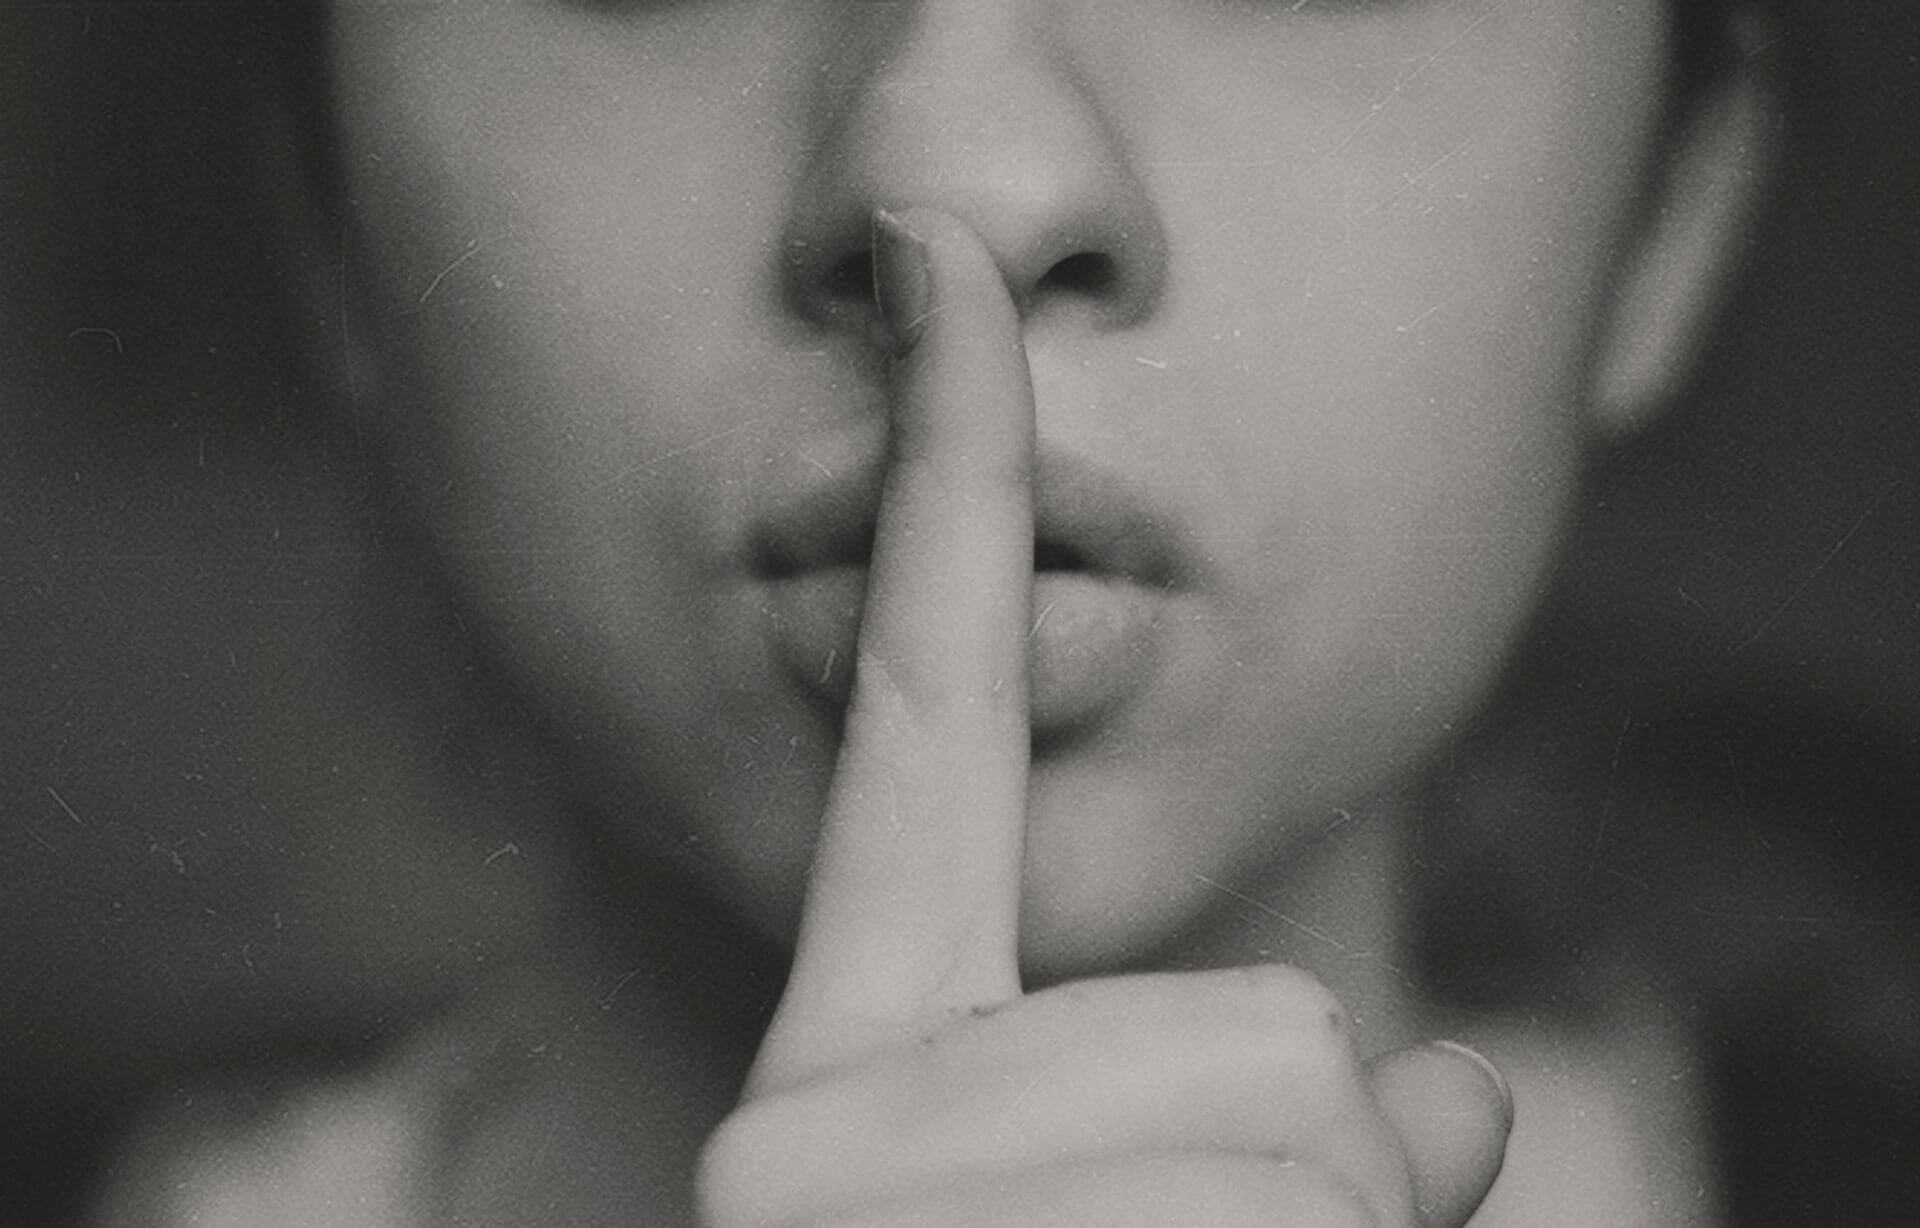 finger over lips as secret